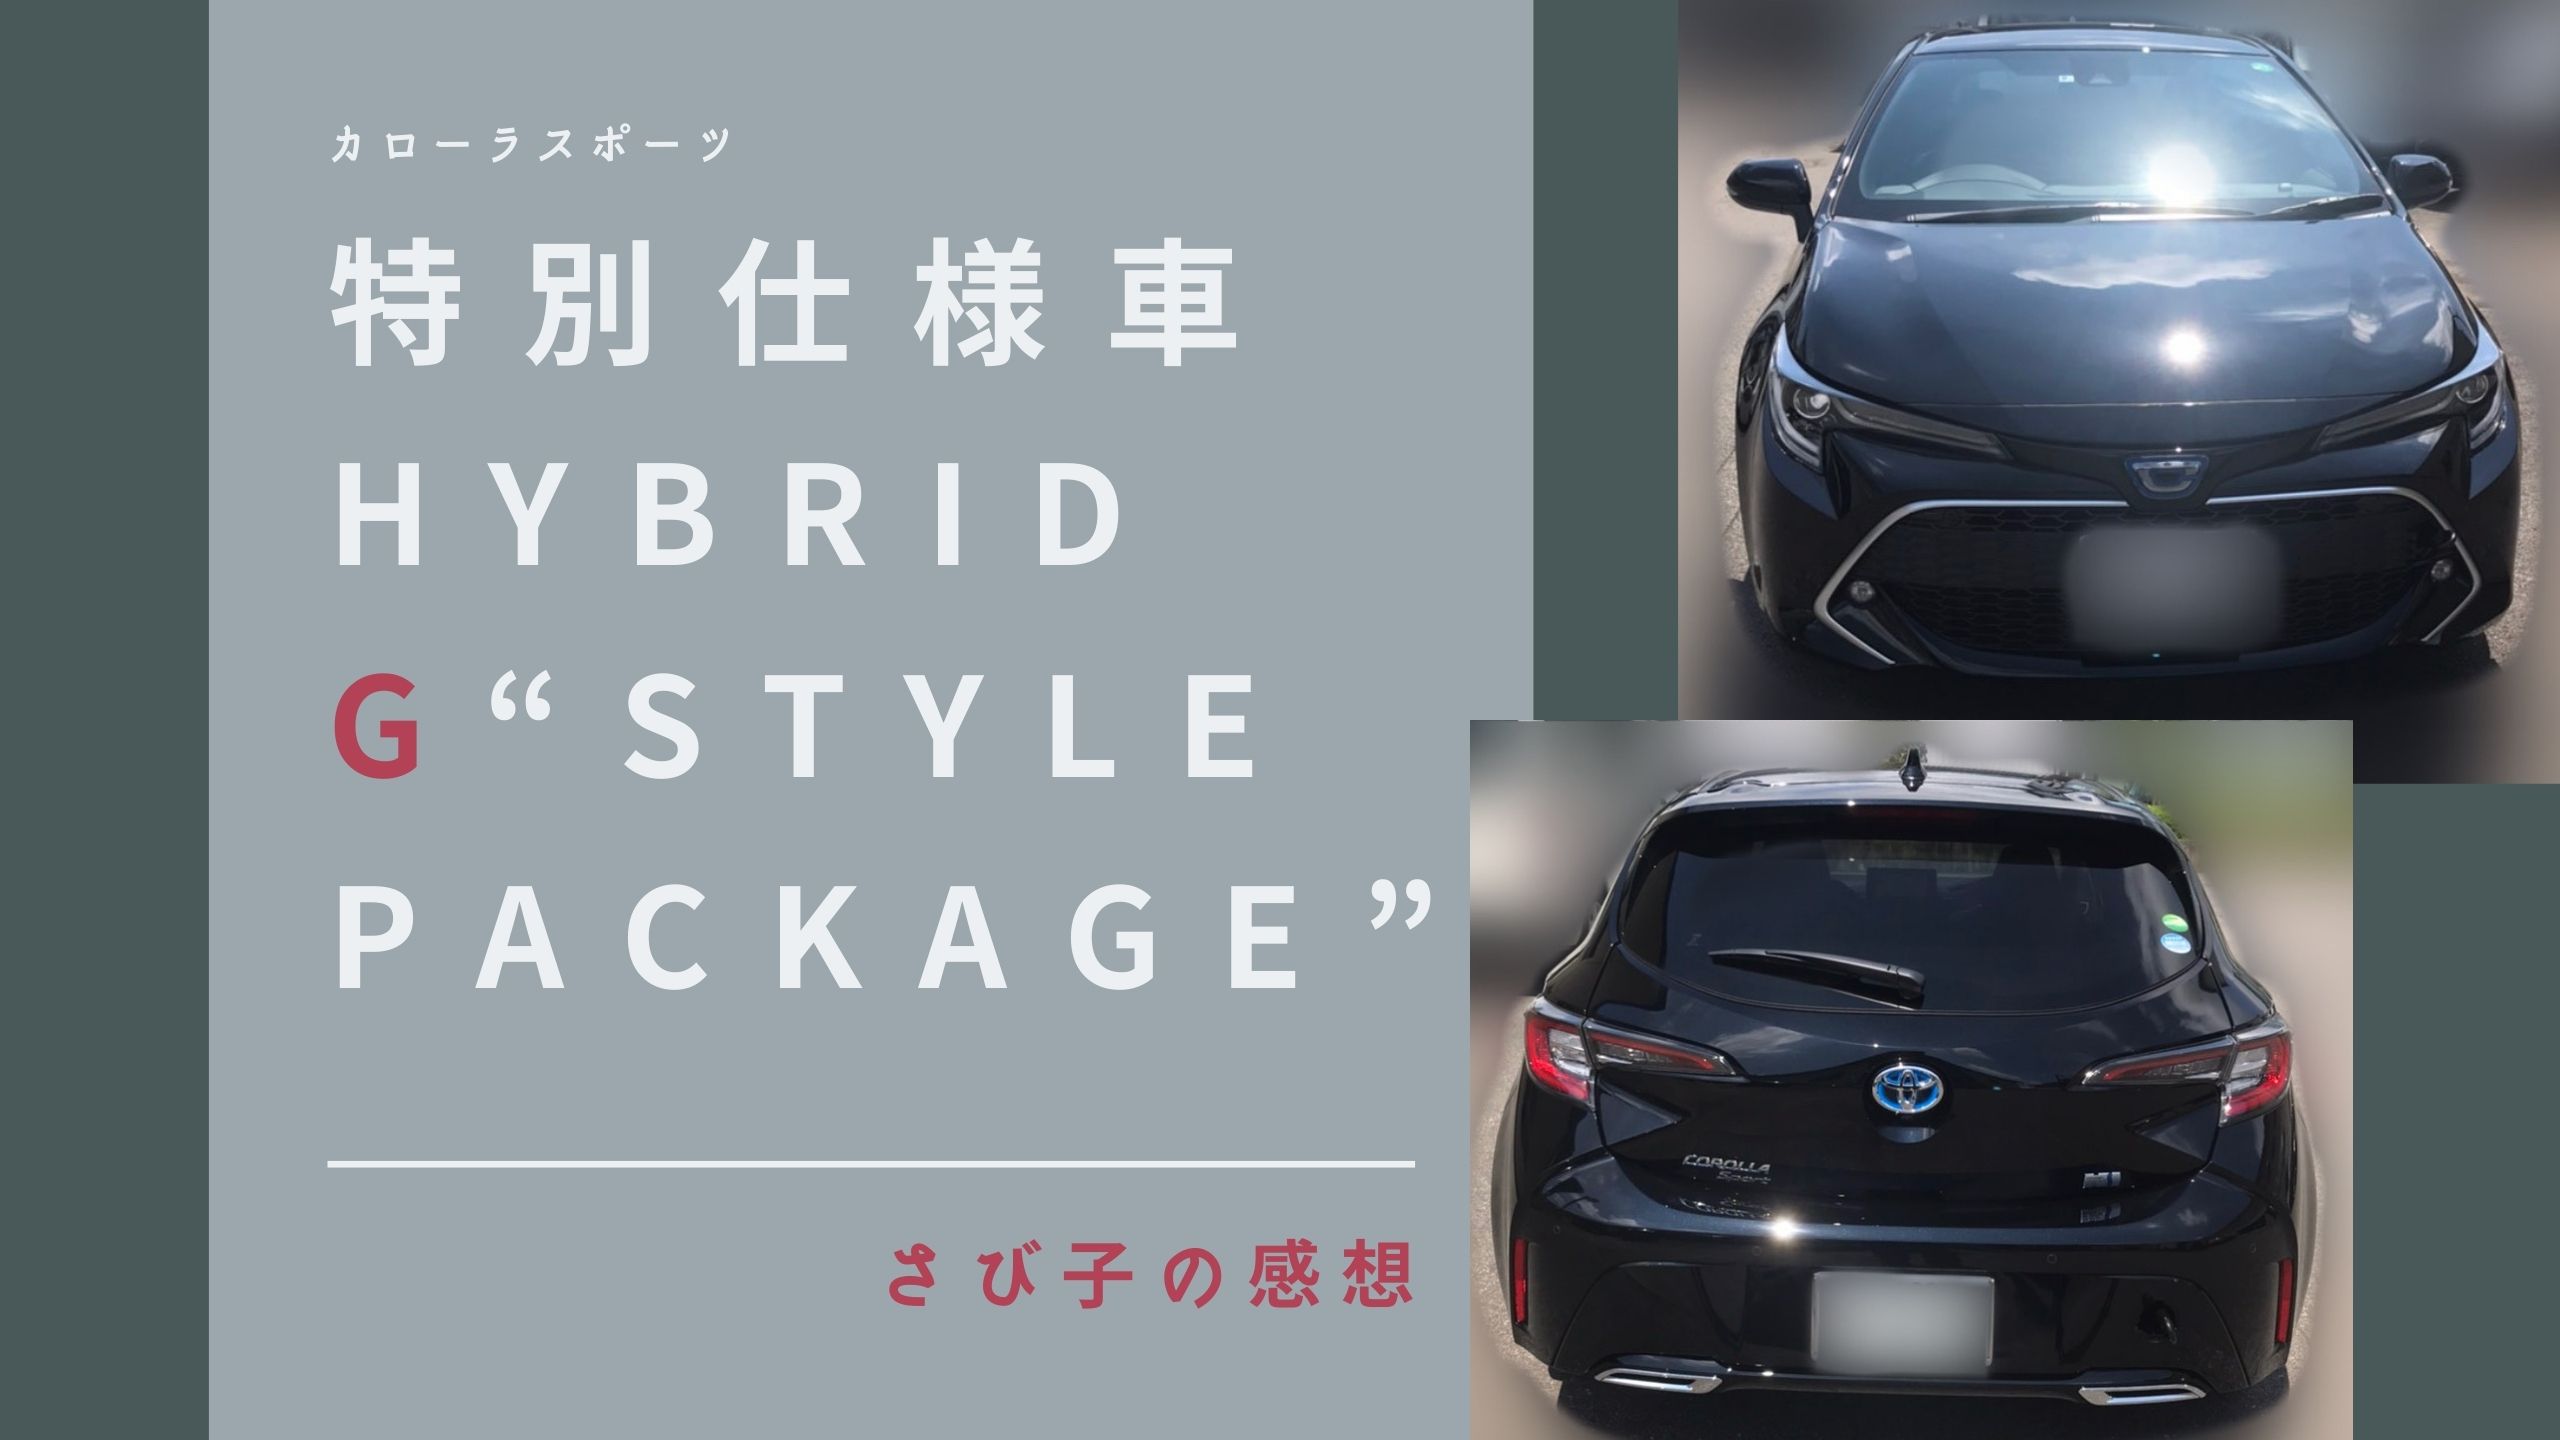 感想 特別仕様車 Hybrid G Style Package はいいぞぅ カロスポを愛でる会